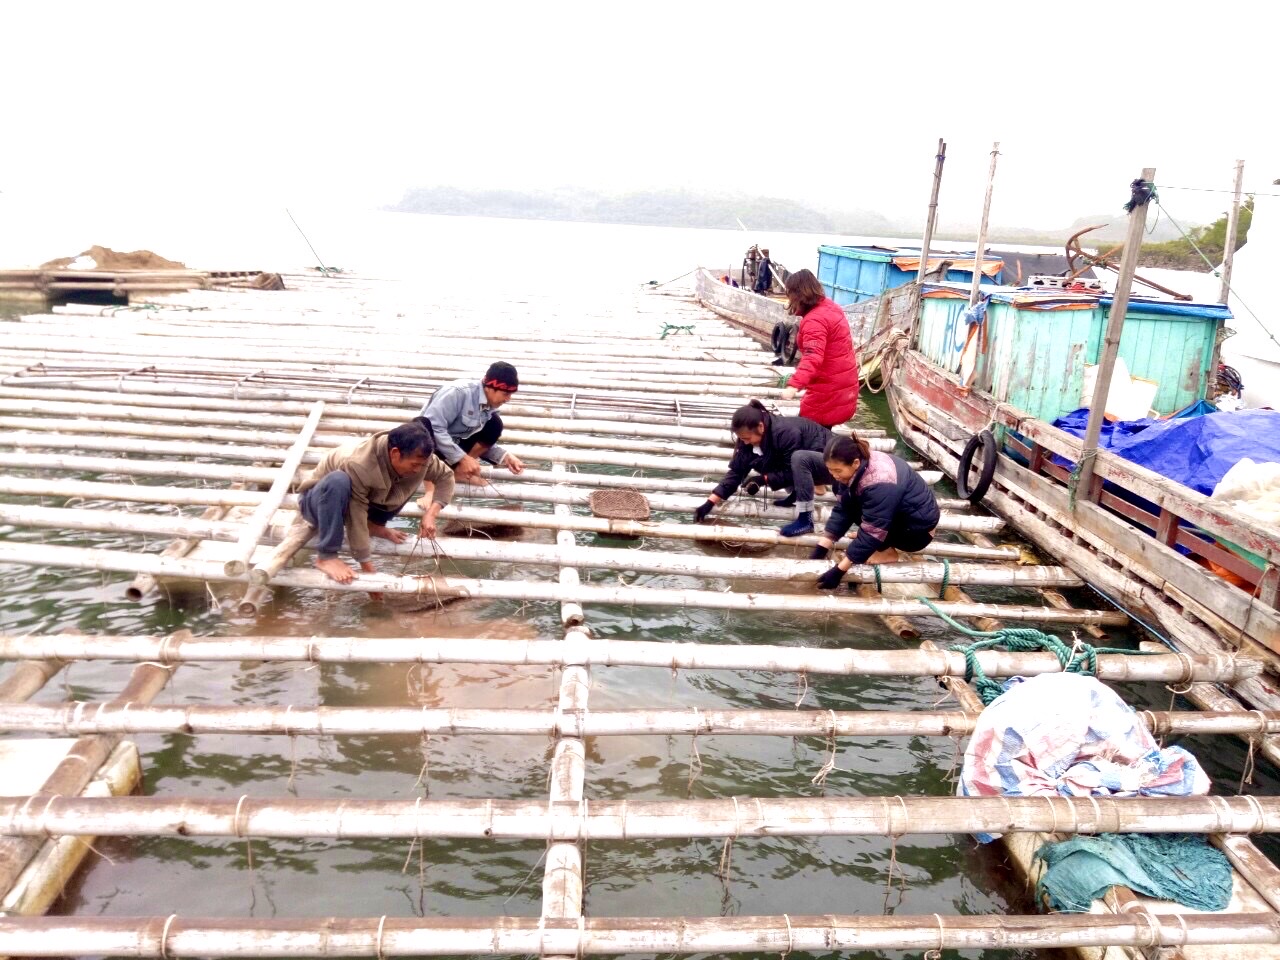 Hiện Lê Thị Hải nuôi ngao hai cùi với quy mô khoảng 20.000 lồng, sản lượng khoảng 40 tấn/năm.